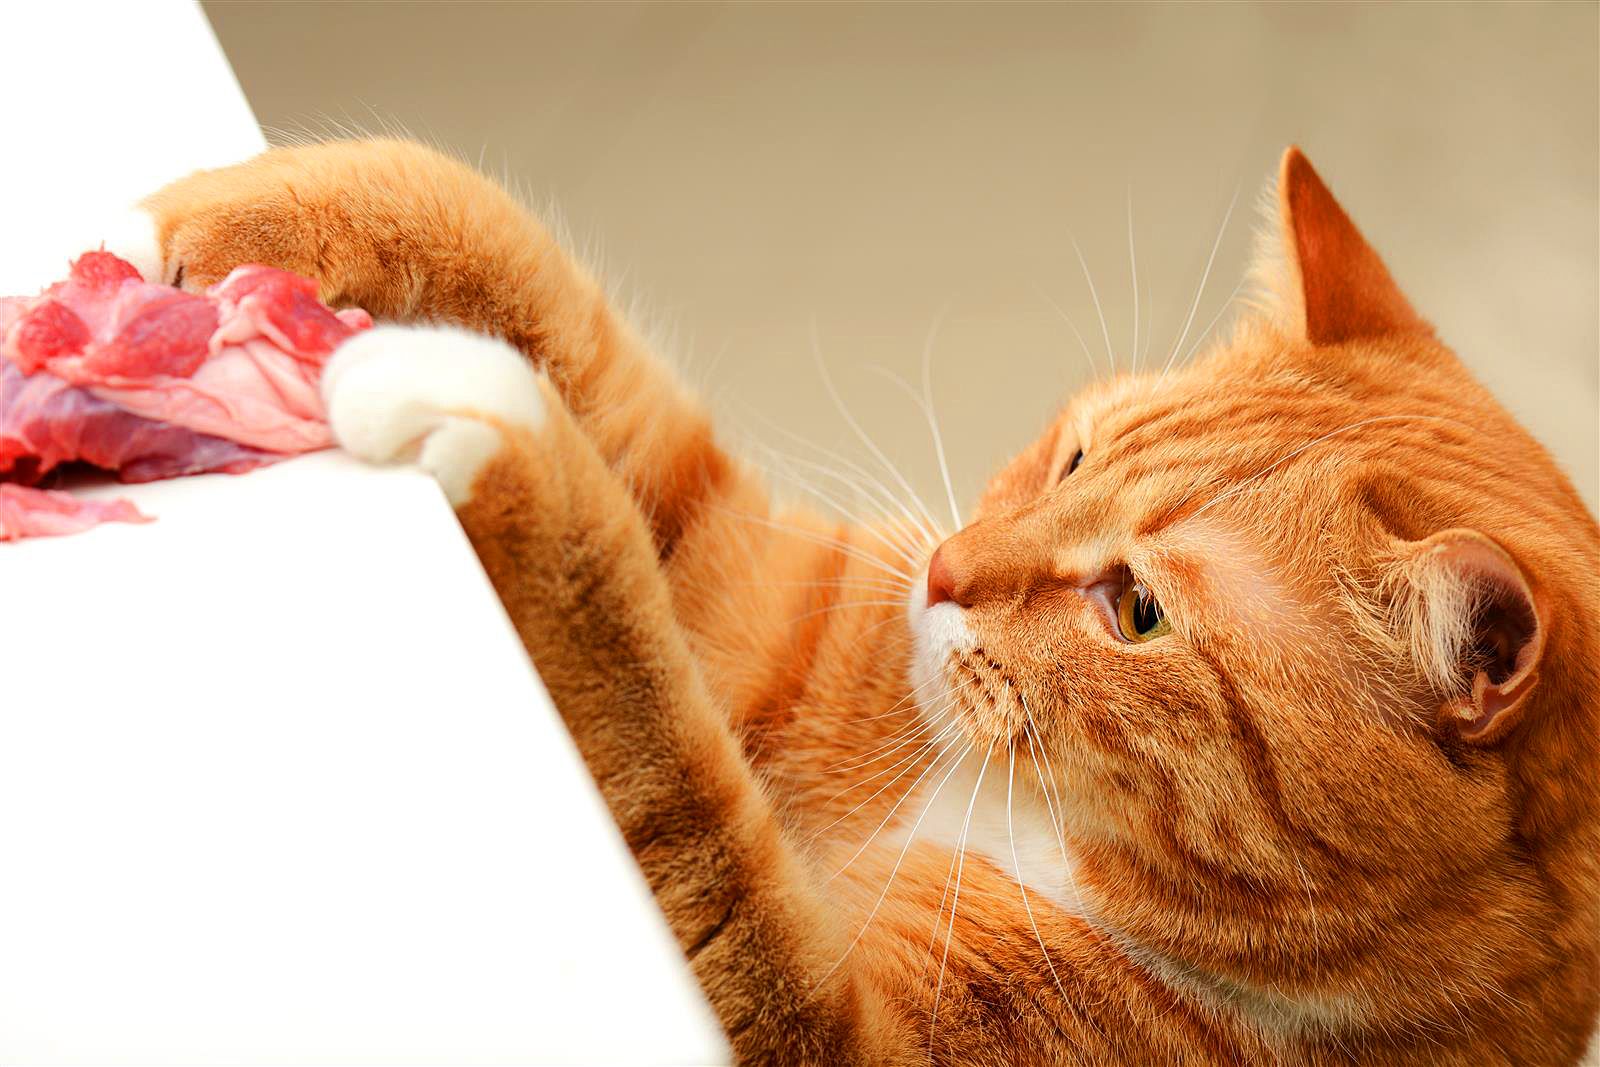 Нужно ли включать витамины в рацион домашней кошки